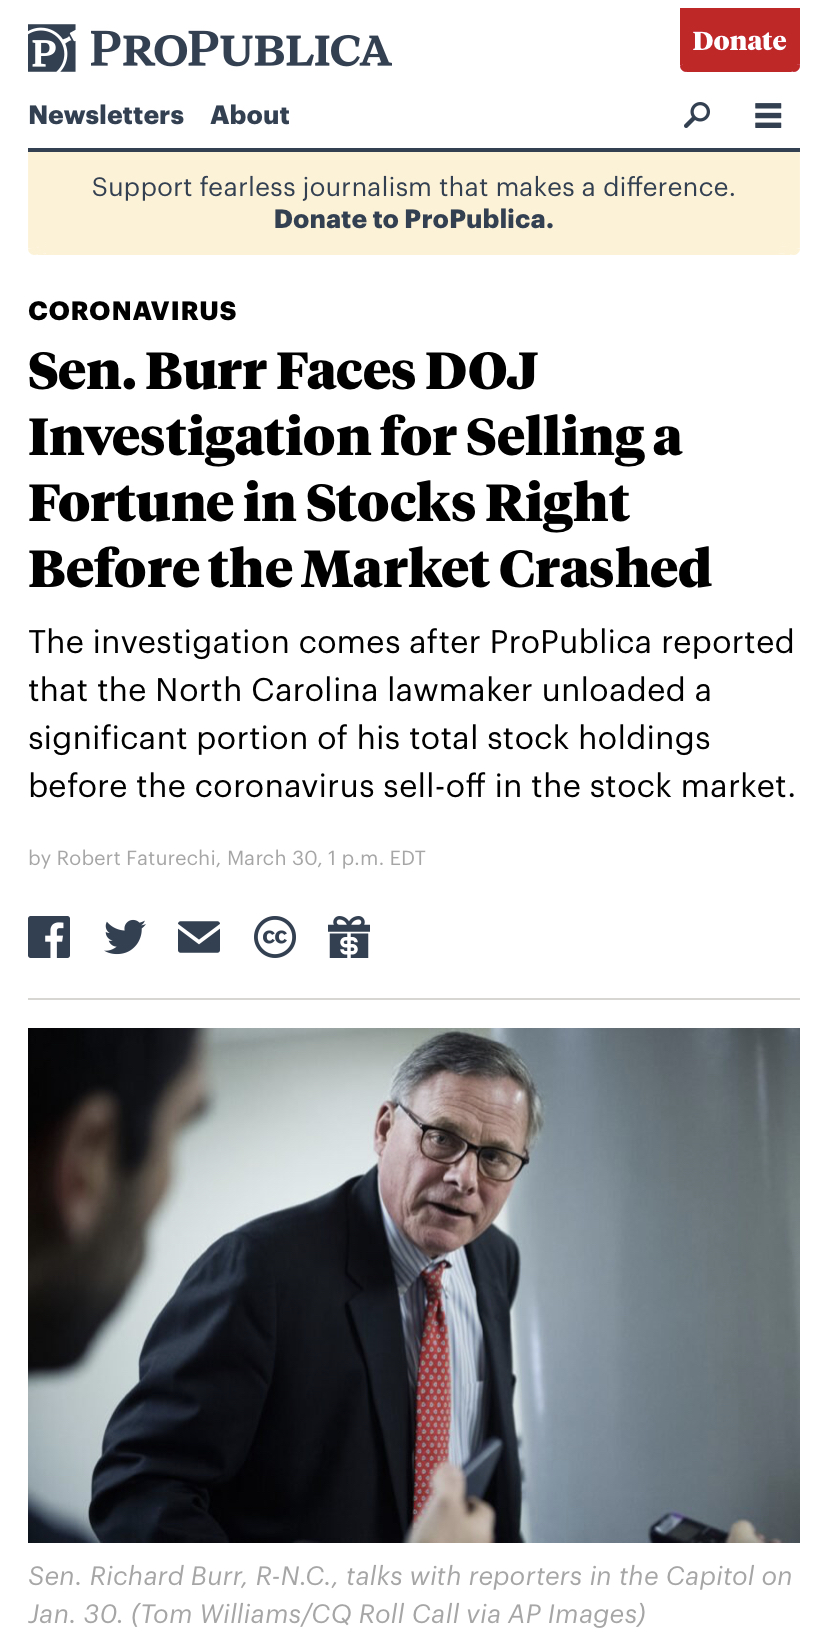 美参议员又曝丑闻 原来抛售股票的故事还没完